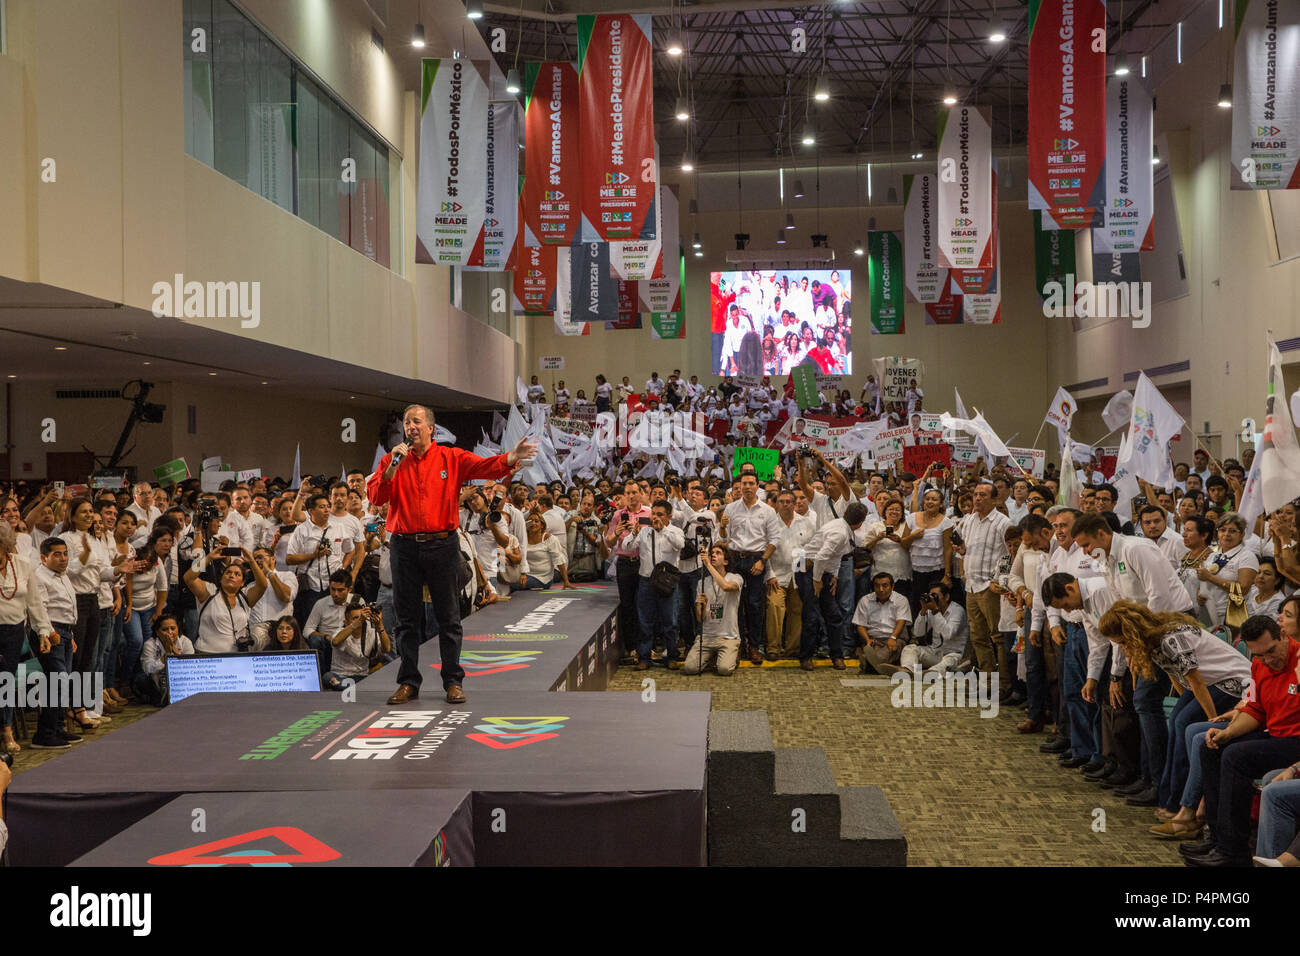 Un evento de campaña para JosŽ Antonio Meade, dirigente del Partido Revolucionario Institucional (PRI) y candidato a las elecciones presidenciales, el 27 de mayo de 2018, Campeche, México. Foto de stock